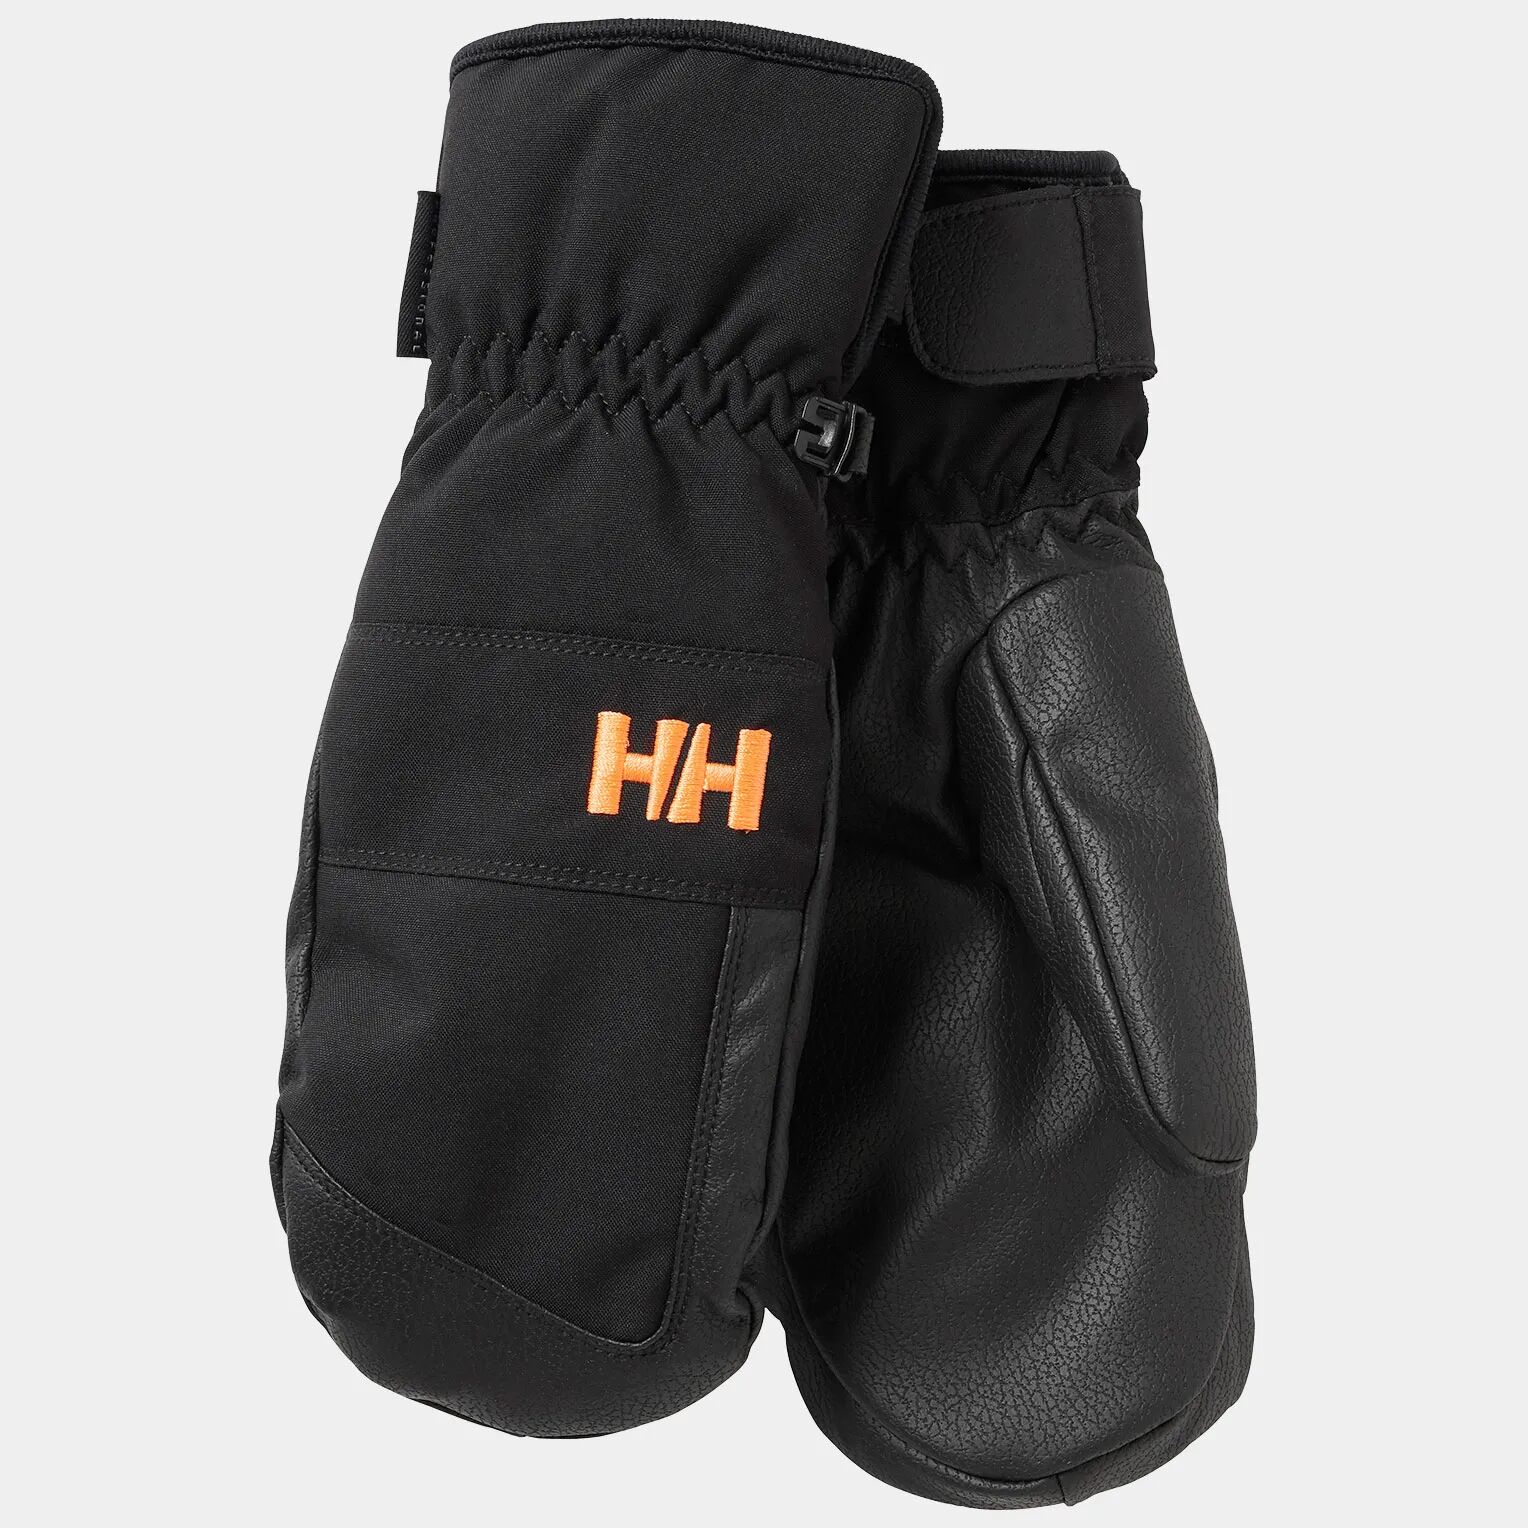 Helly Hansen HH Junior's Waterproof Mitten 2.0 Black 128/8 - Black New - Unisex